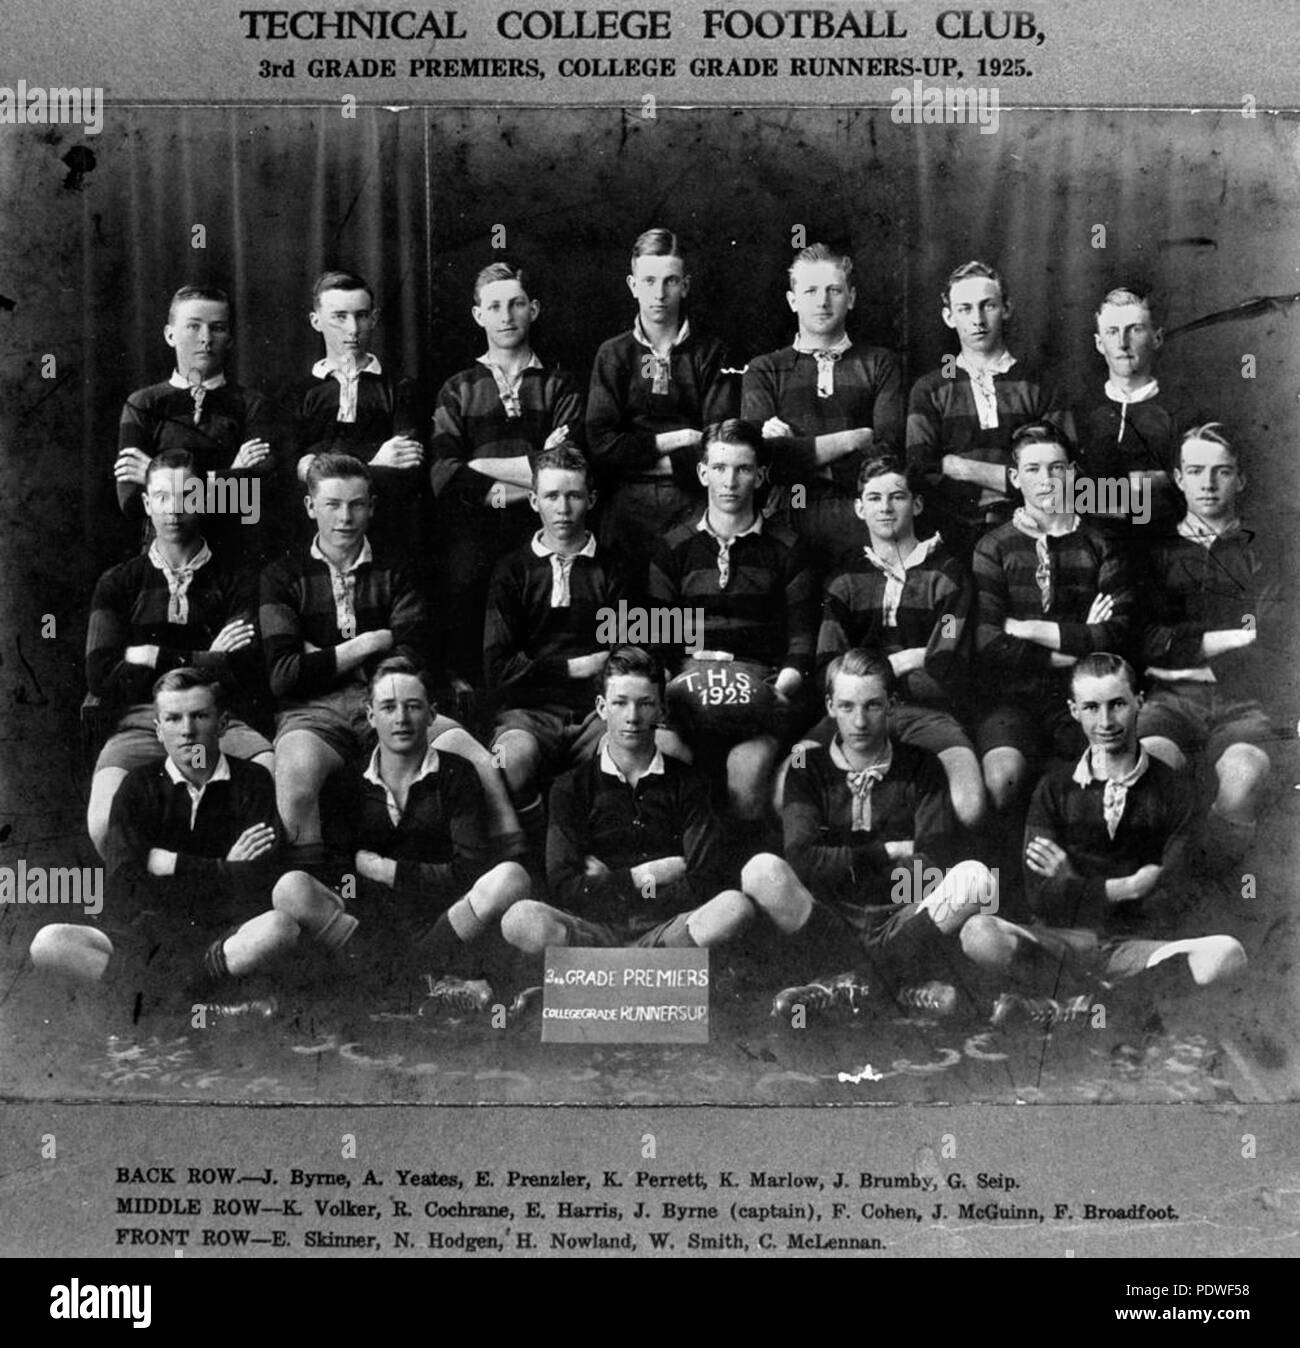 222 StateLibQld 1 140047 Rugby Union Team aus der Technischen Hochschule, 3. Klasse Premieren und College grad Nächstplatzierten, 1925 Stockfoto